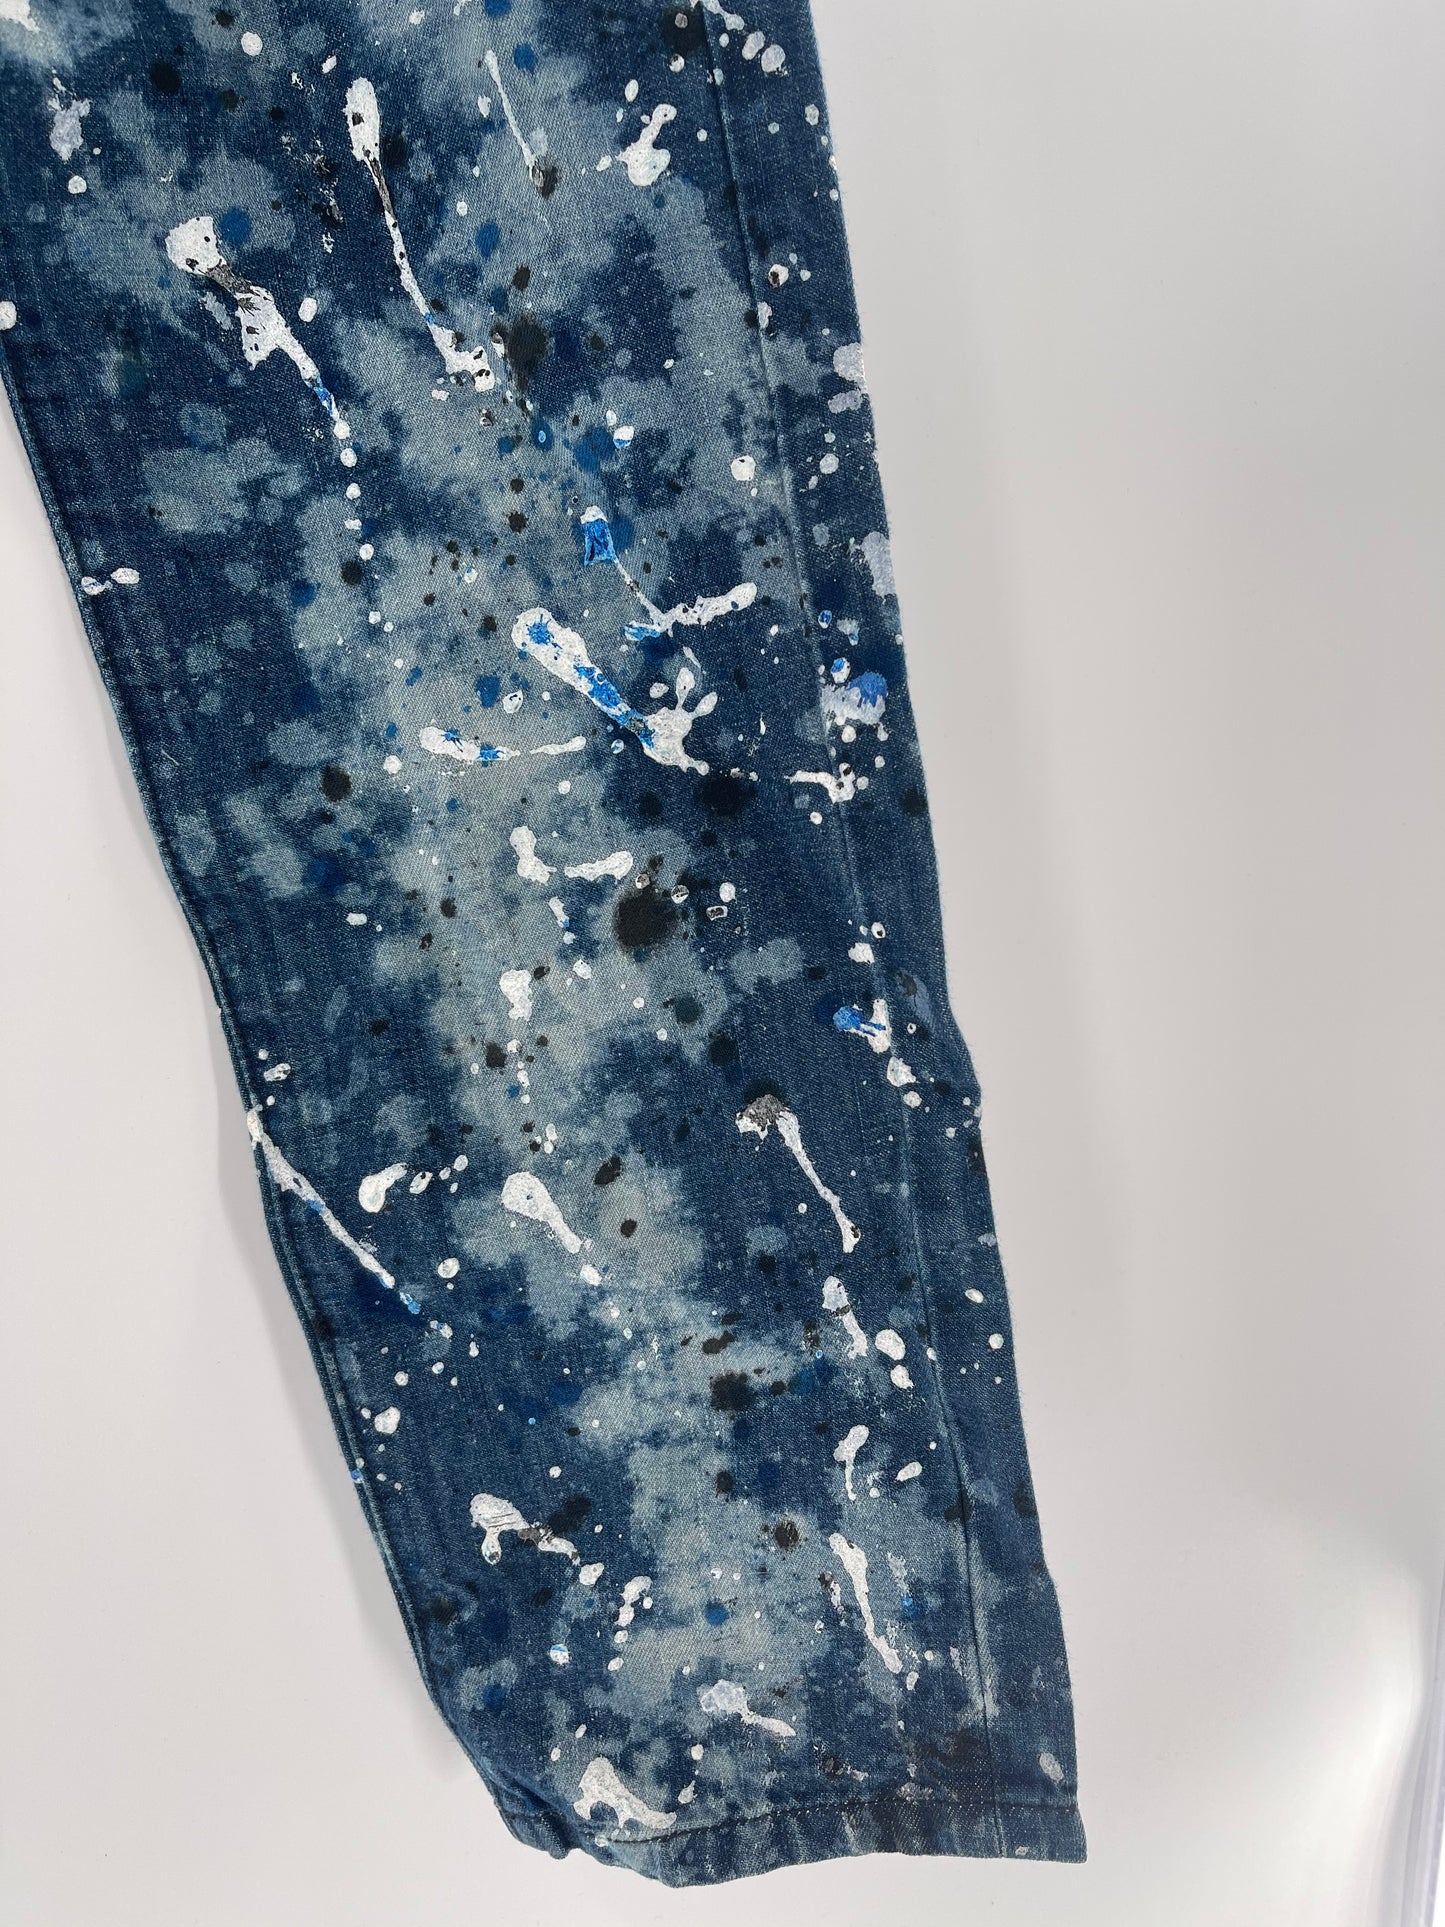 Artisan De Luxe Anthropologie- White + Blue Paint Splattered Jeans